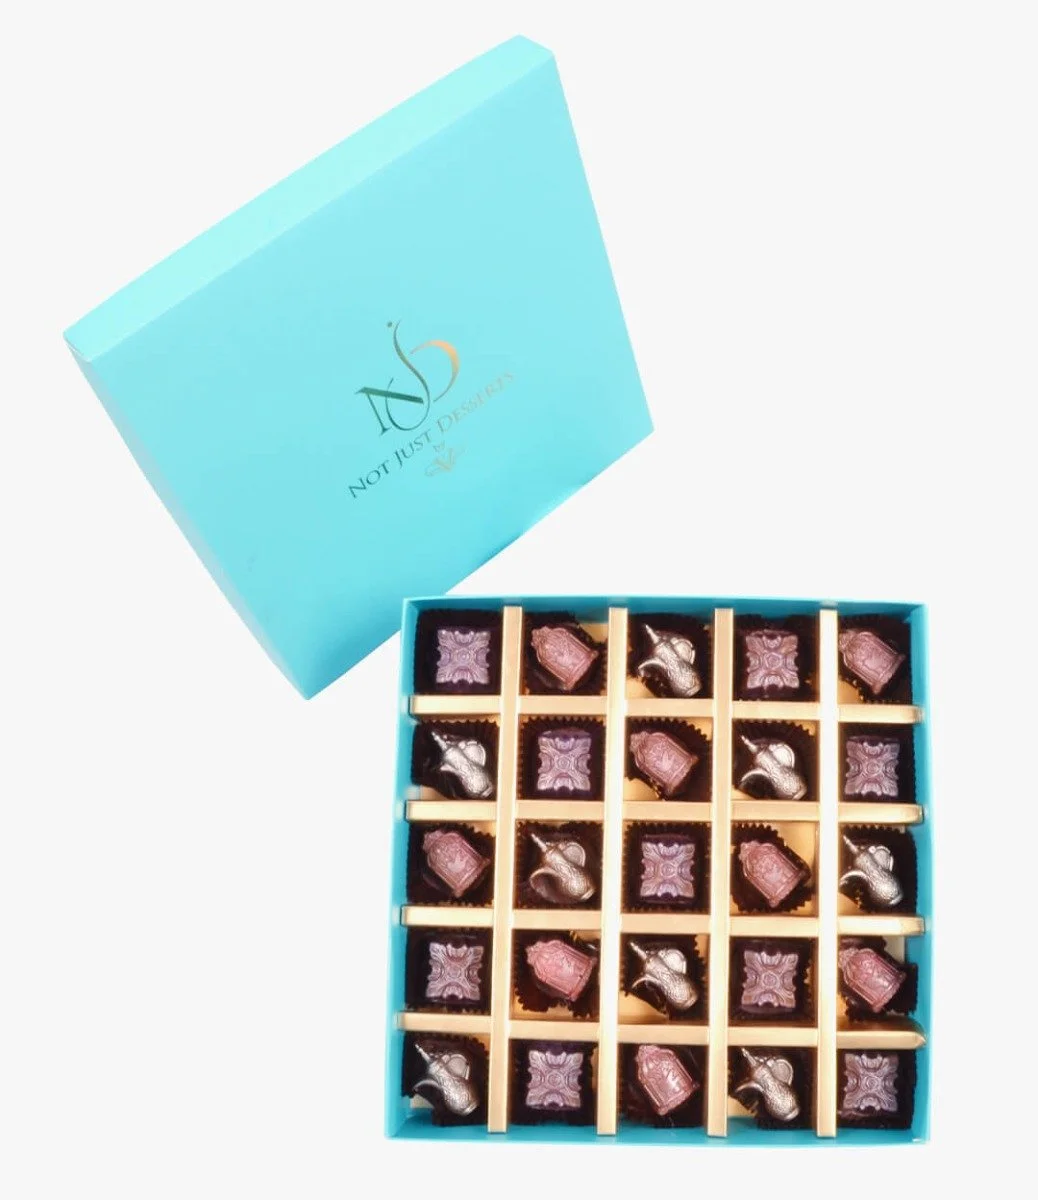 صندوق شوكولاتة بأشكال رمضانية (25 قطعة) من NJD